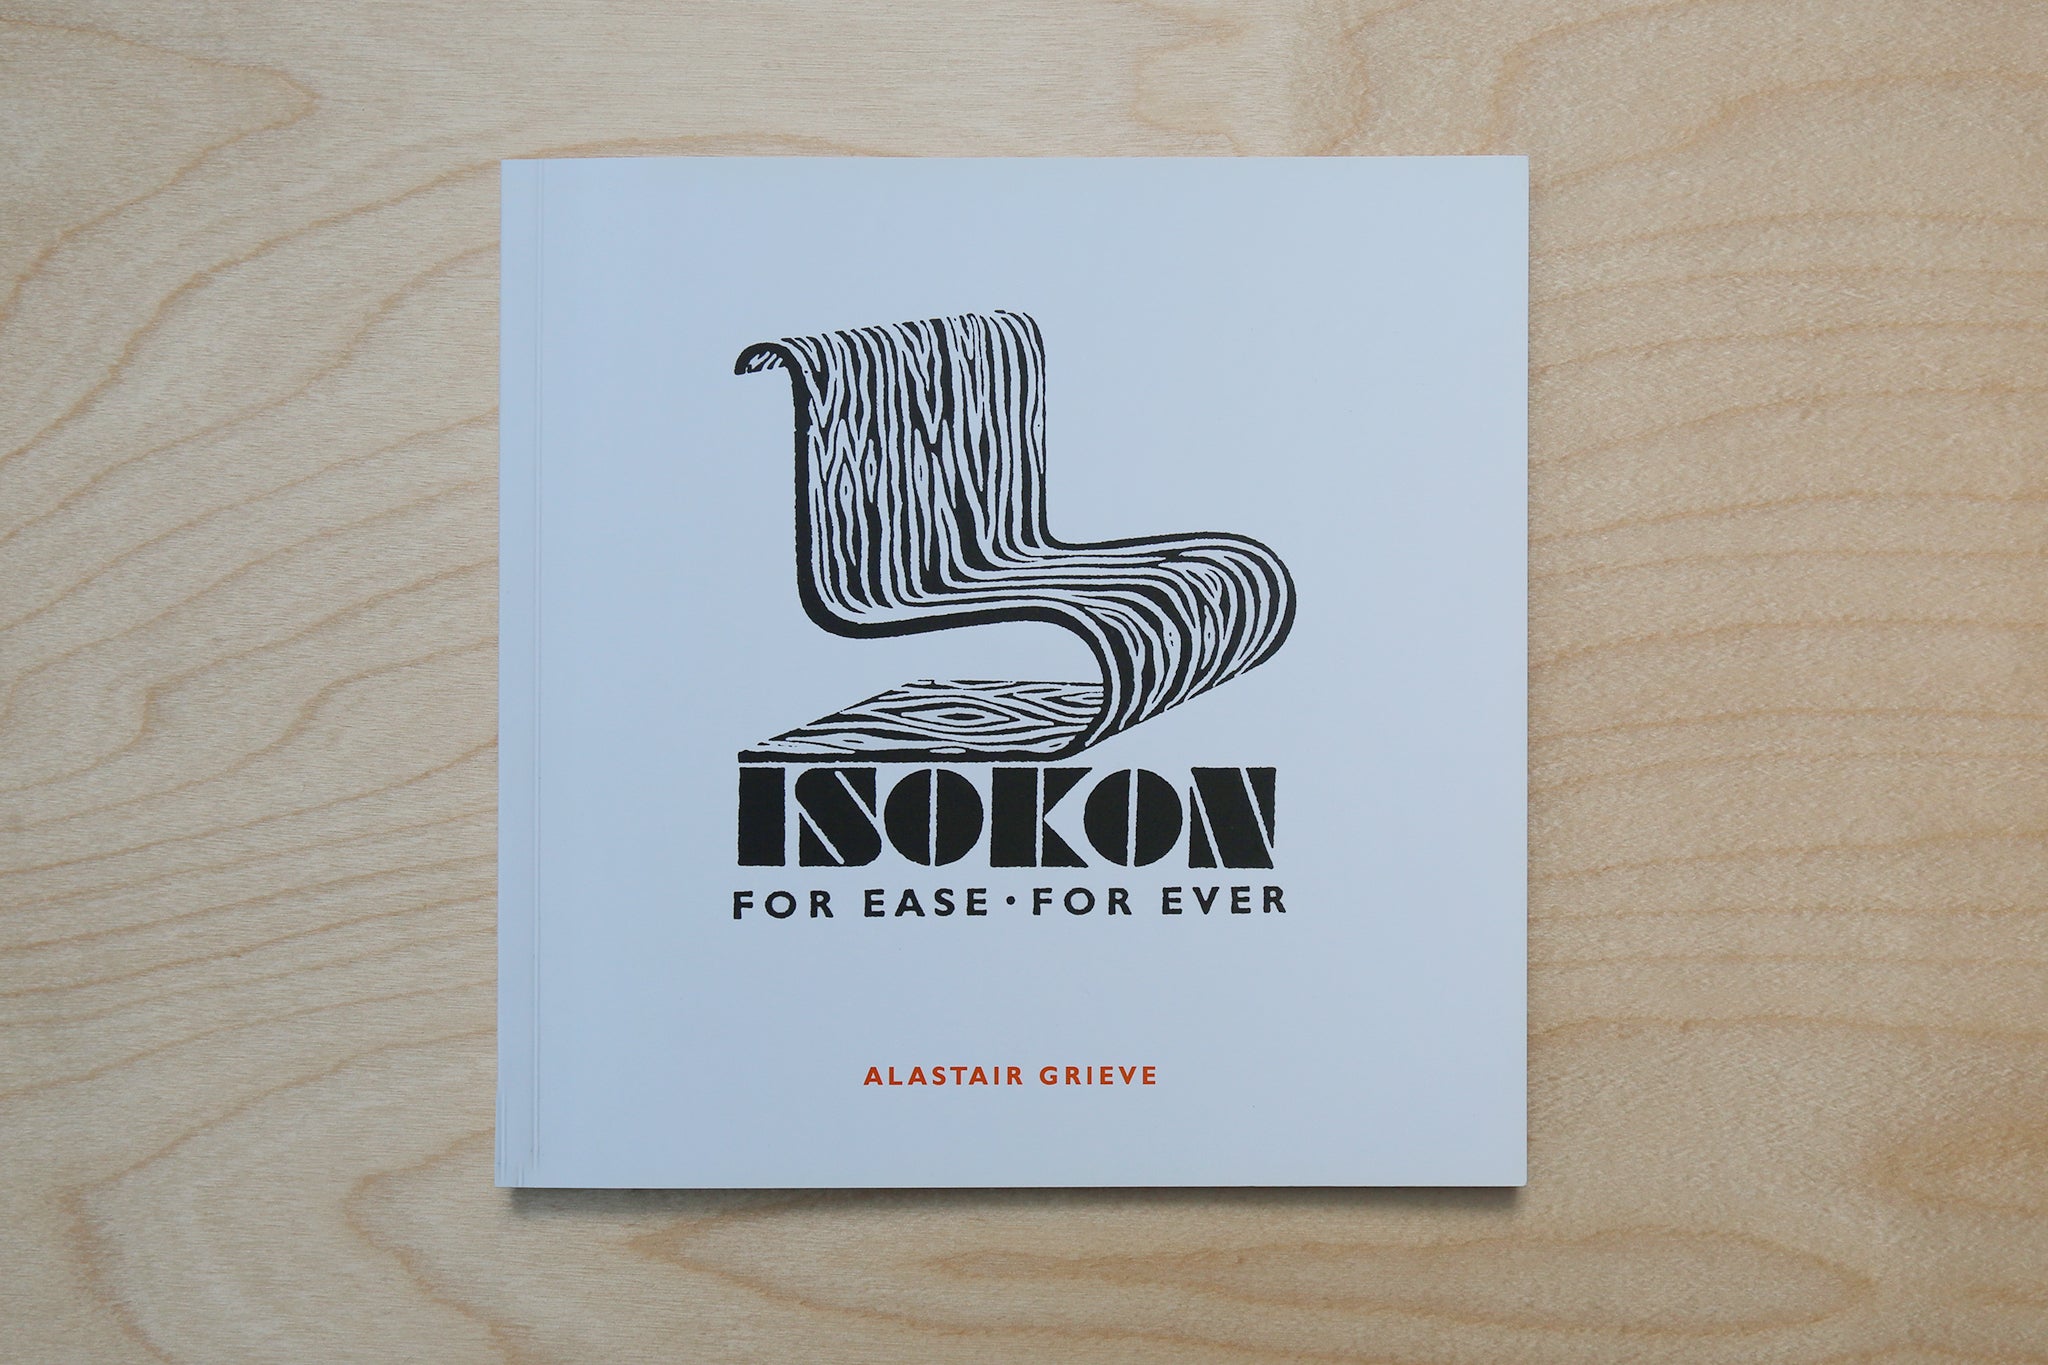 Isokon Mini Book